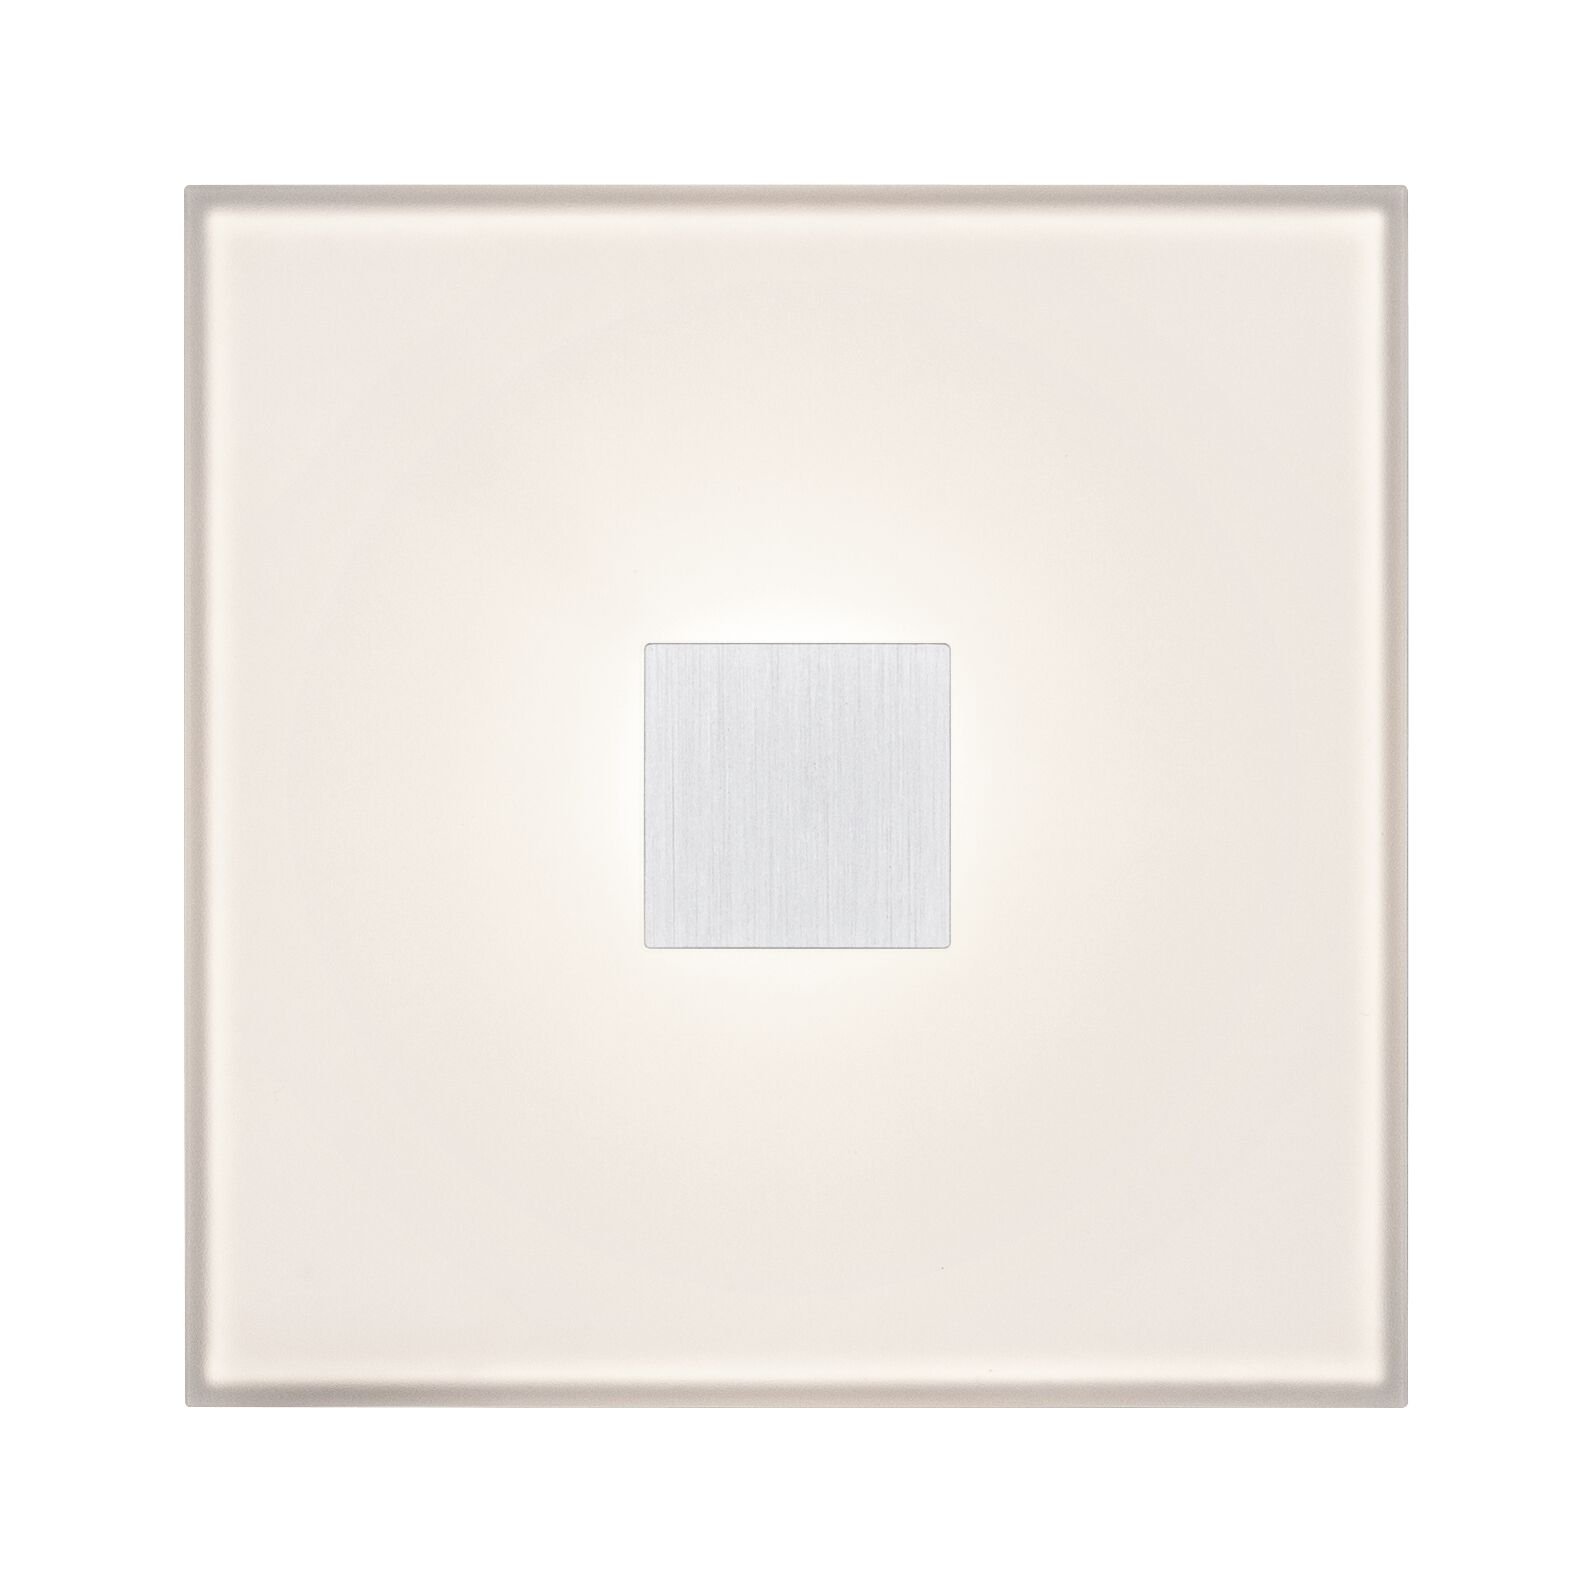 LumiTiles LED Fliesen Square Einzelfliese IP44 100x10mm 12lm 12V 0,75W RGBW Weiß Kunststoff/Aluminium